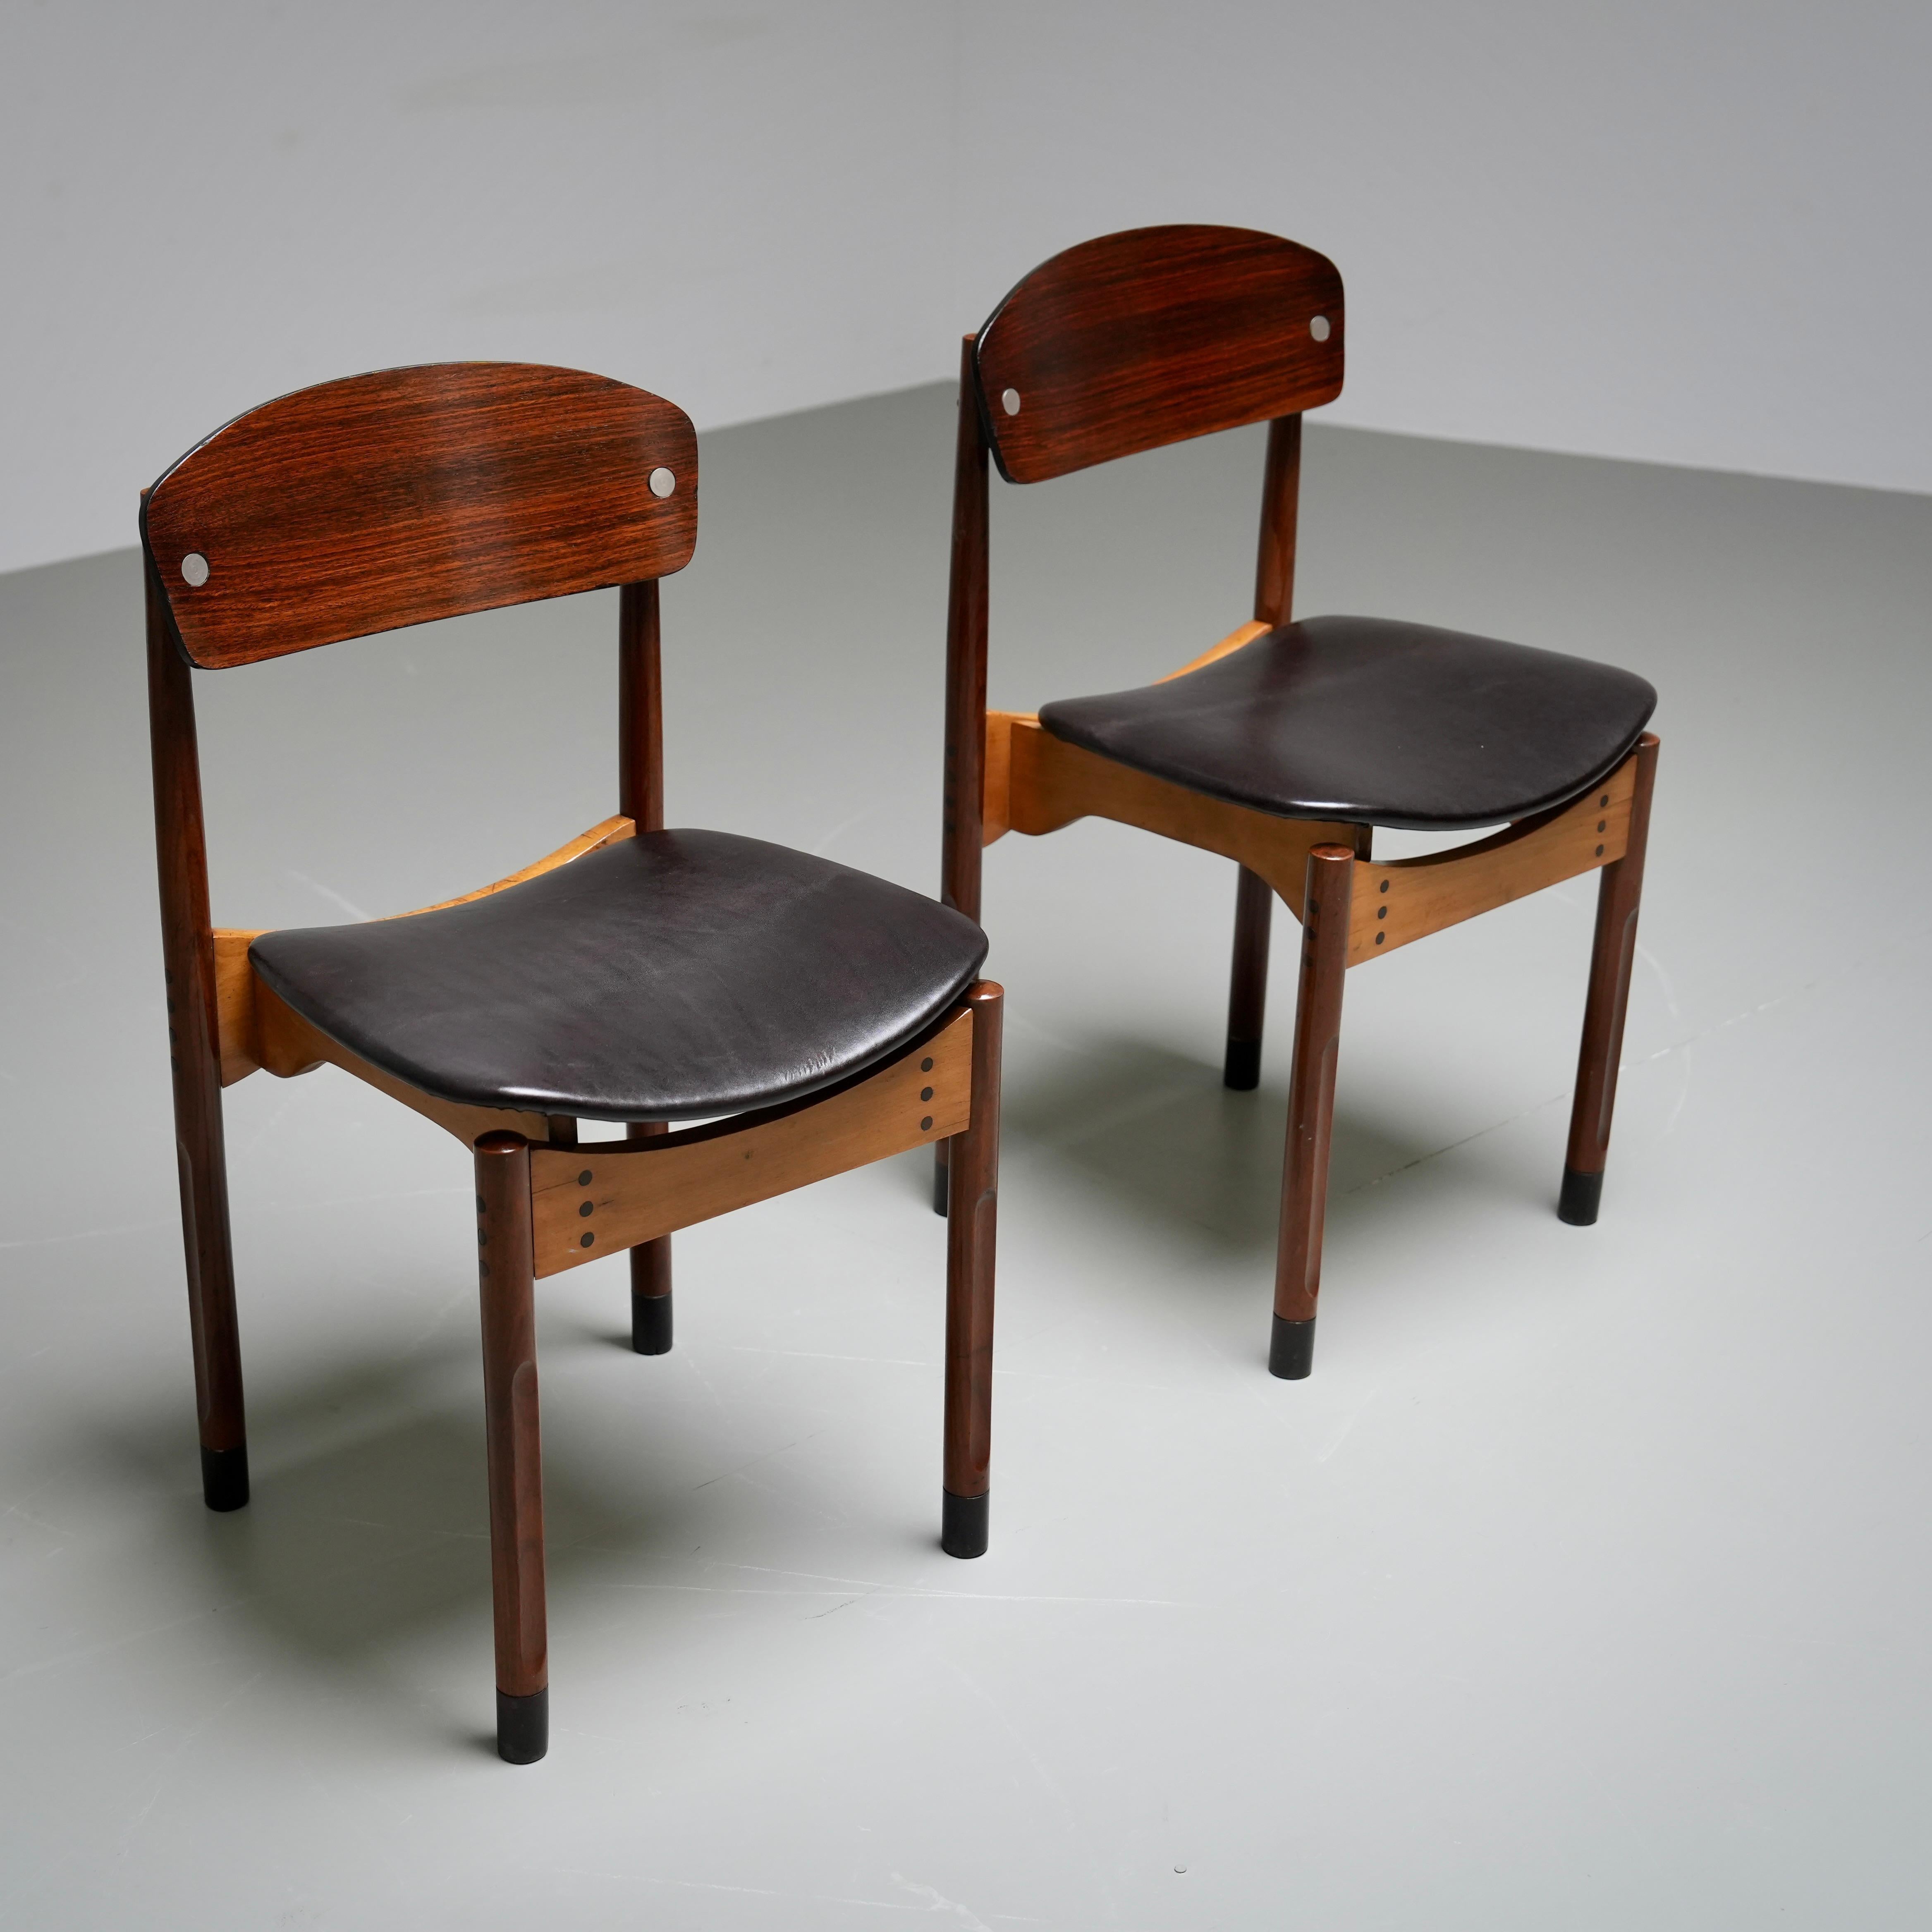 Nur zwei sehr schöne Stühle. Wir fanden die Formen und die verschiedenen Farben des Holzes einfach toll. Sehr italienisch und die Italiener machen es besser.